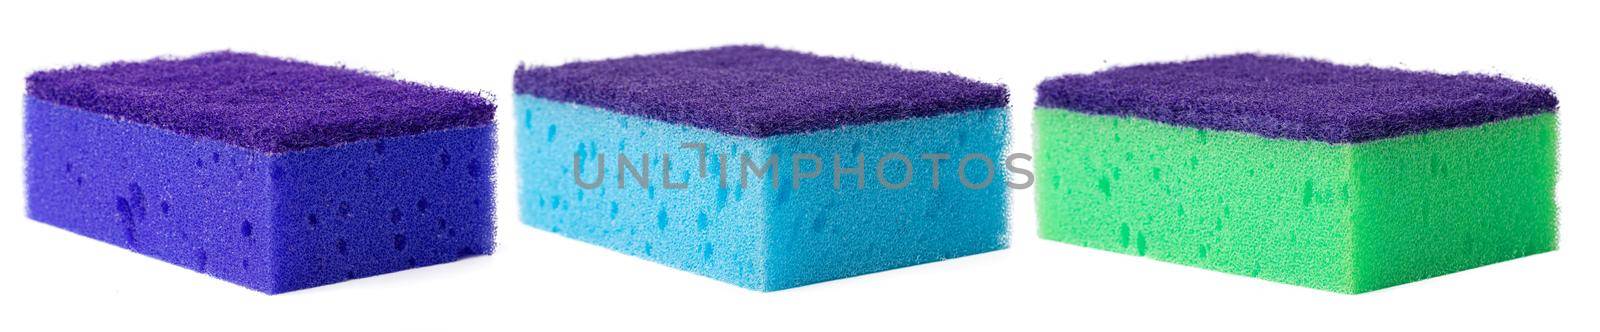 Kitchen sponge for dish washing isolated on white background, close up